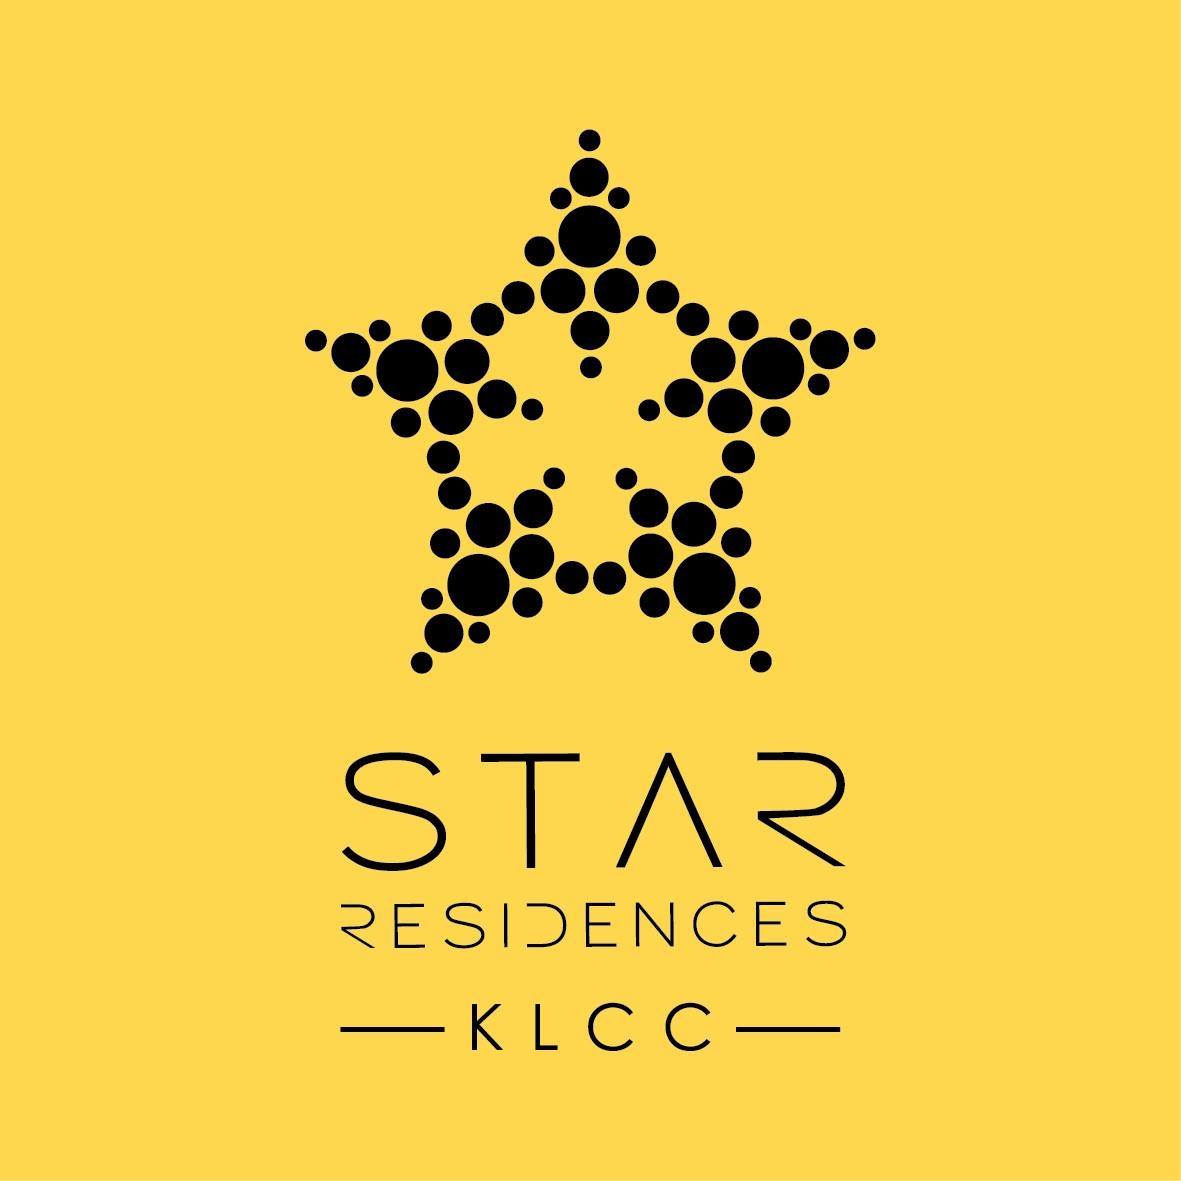 Star Residences KLCC